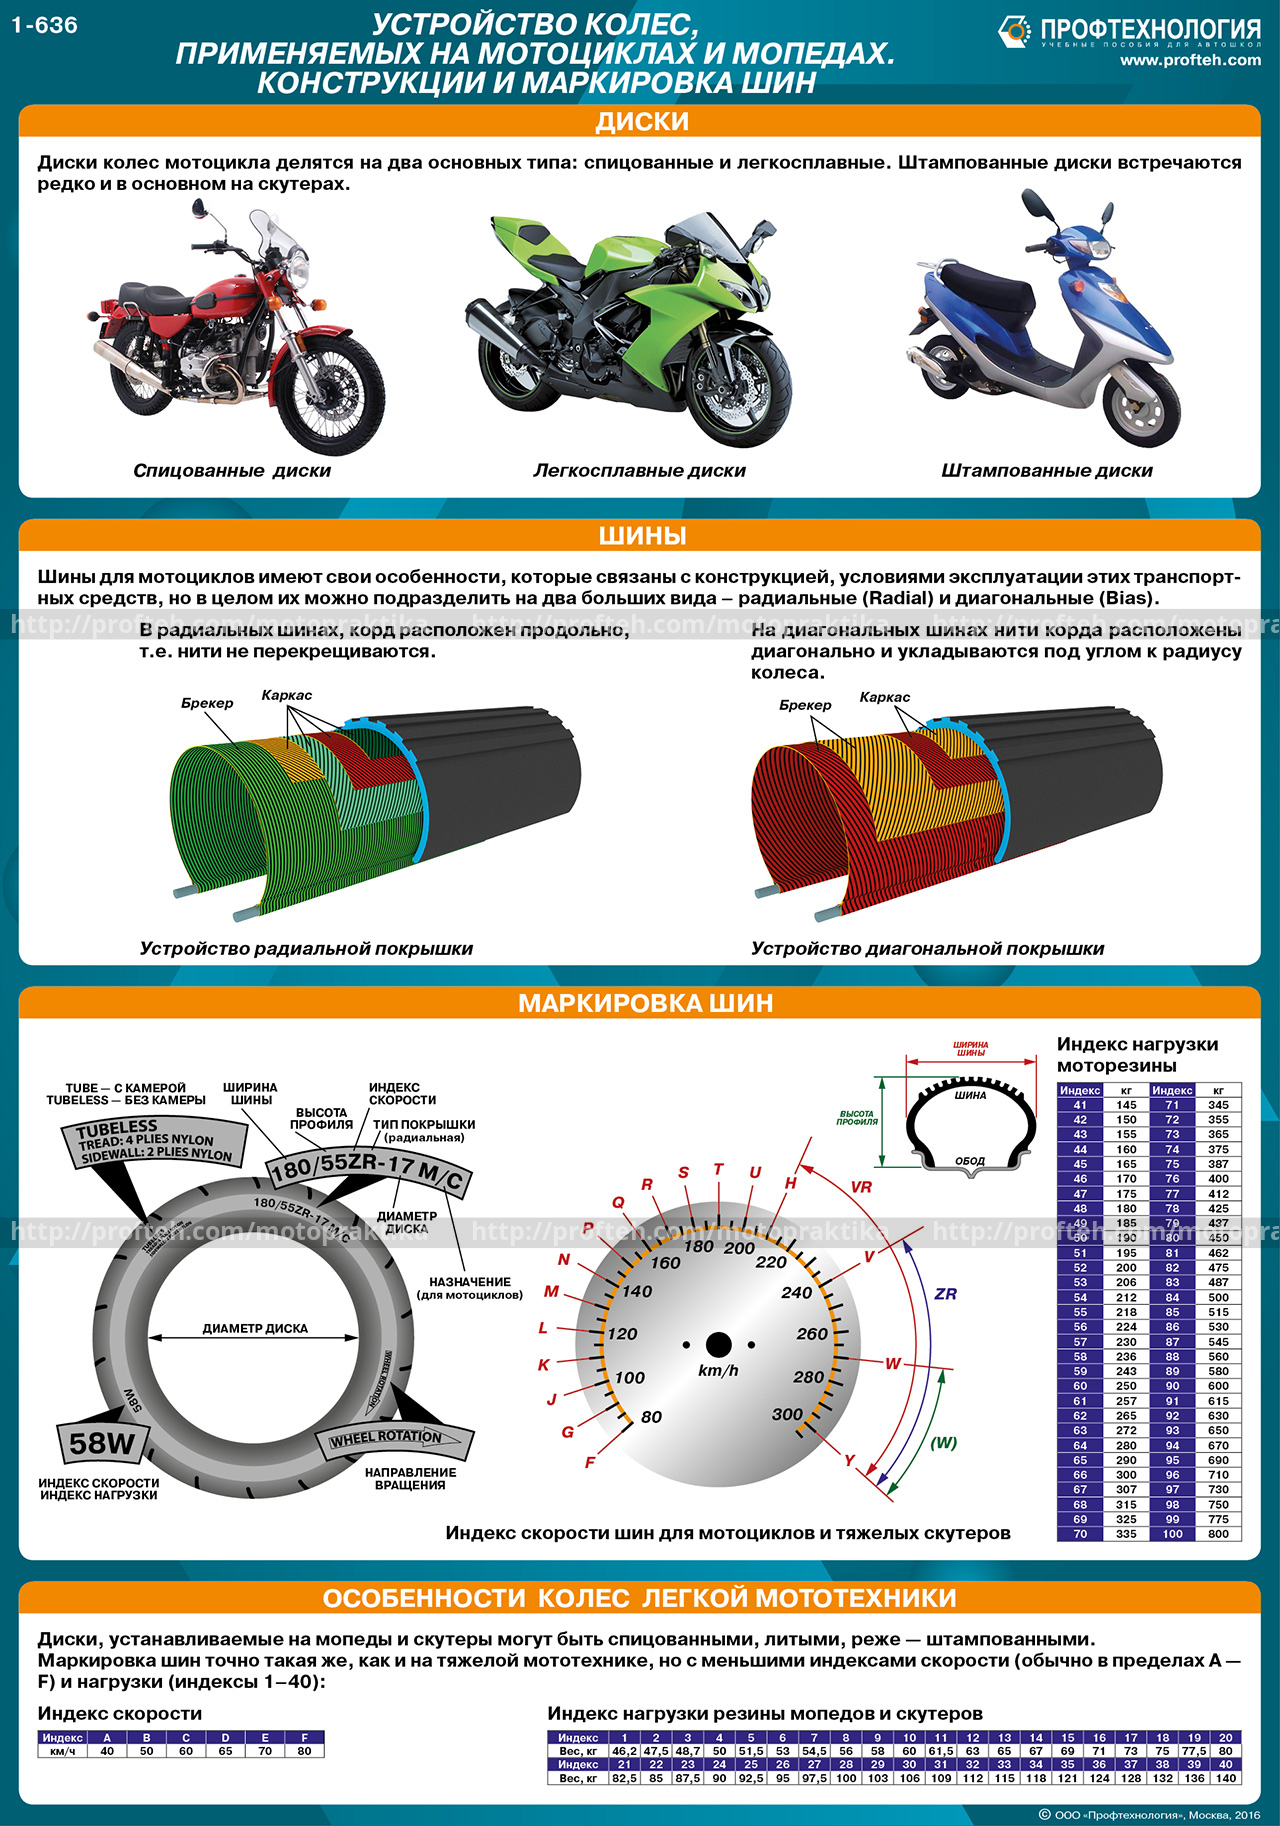 Размер колес мопеда. Как определить Размерность резины мотоцикла. Таблица размеров покрышек мотоцикла. Параметры мото камер и покрышек таблица. Таблица размеров камер для колес мотоциклов.